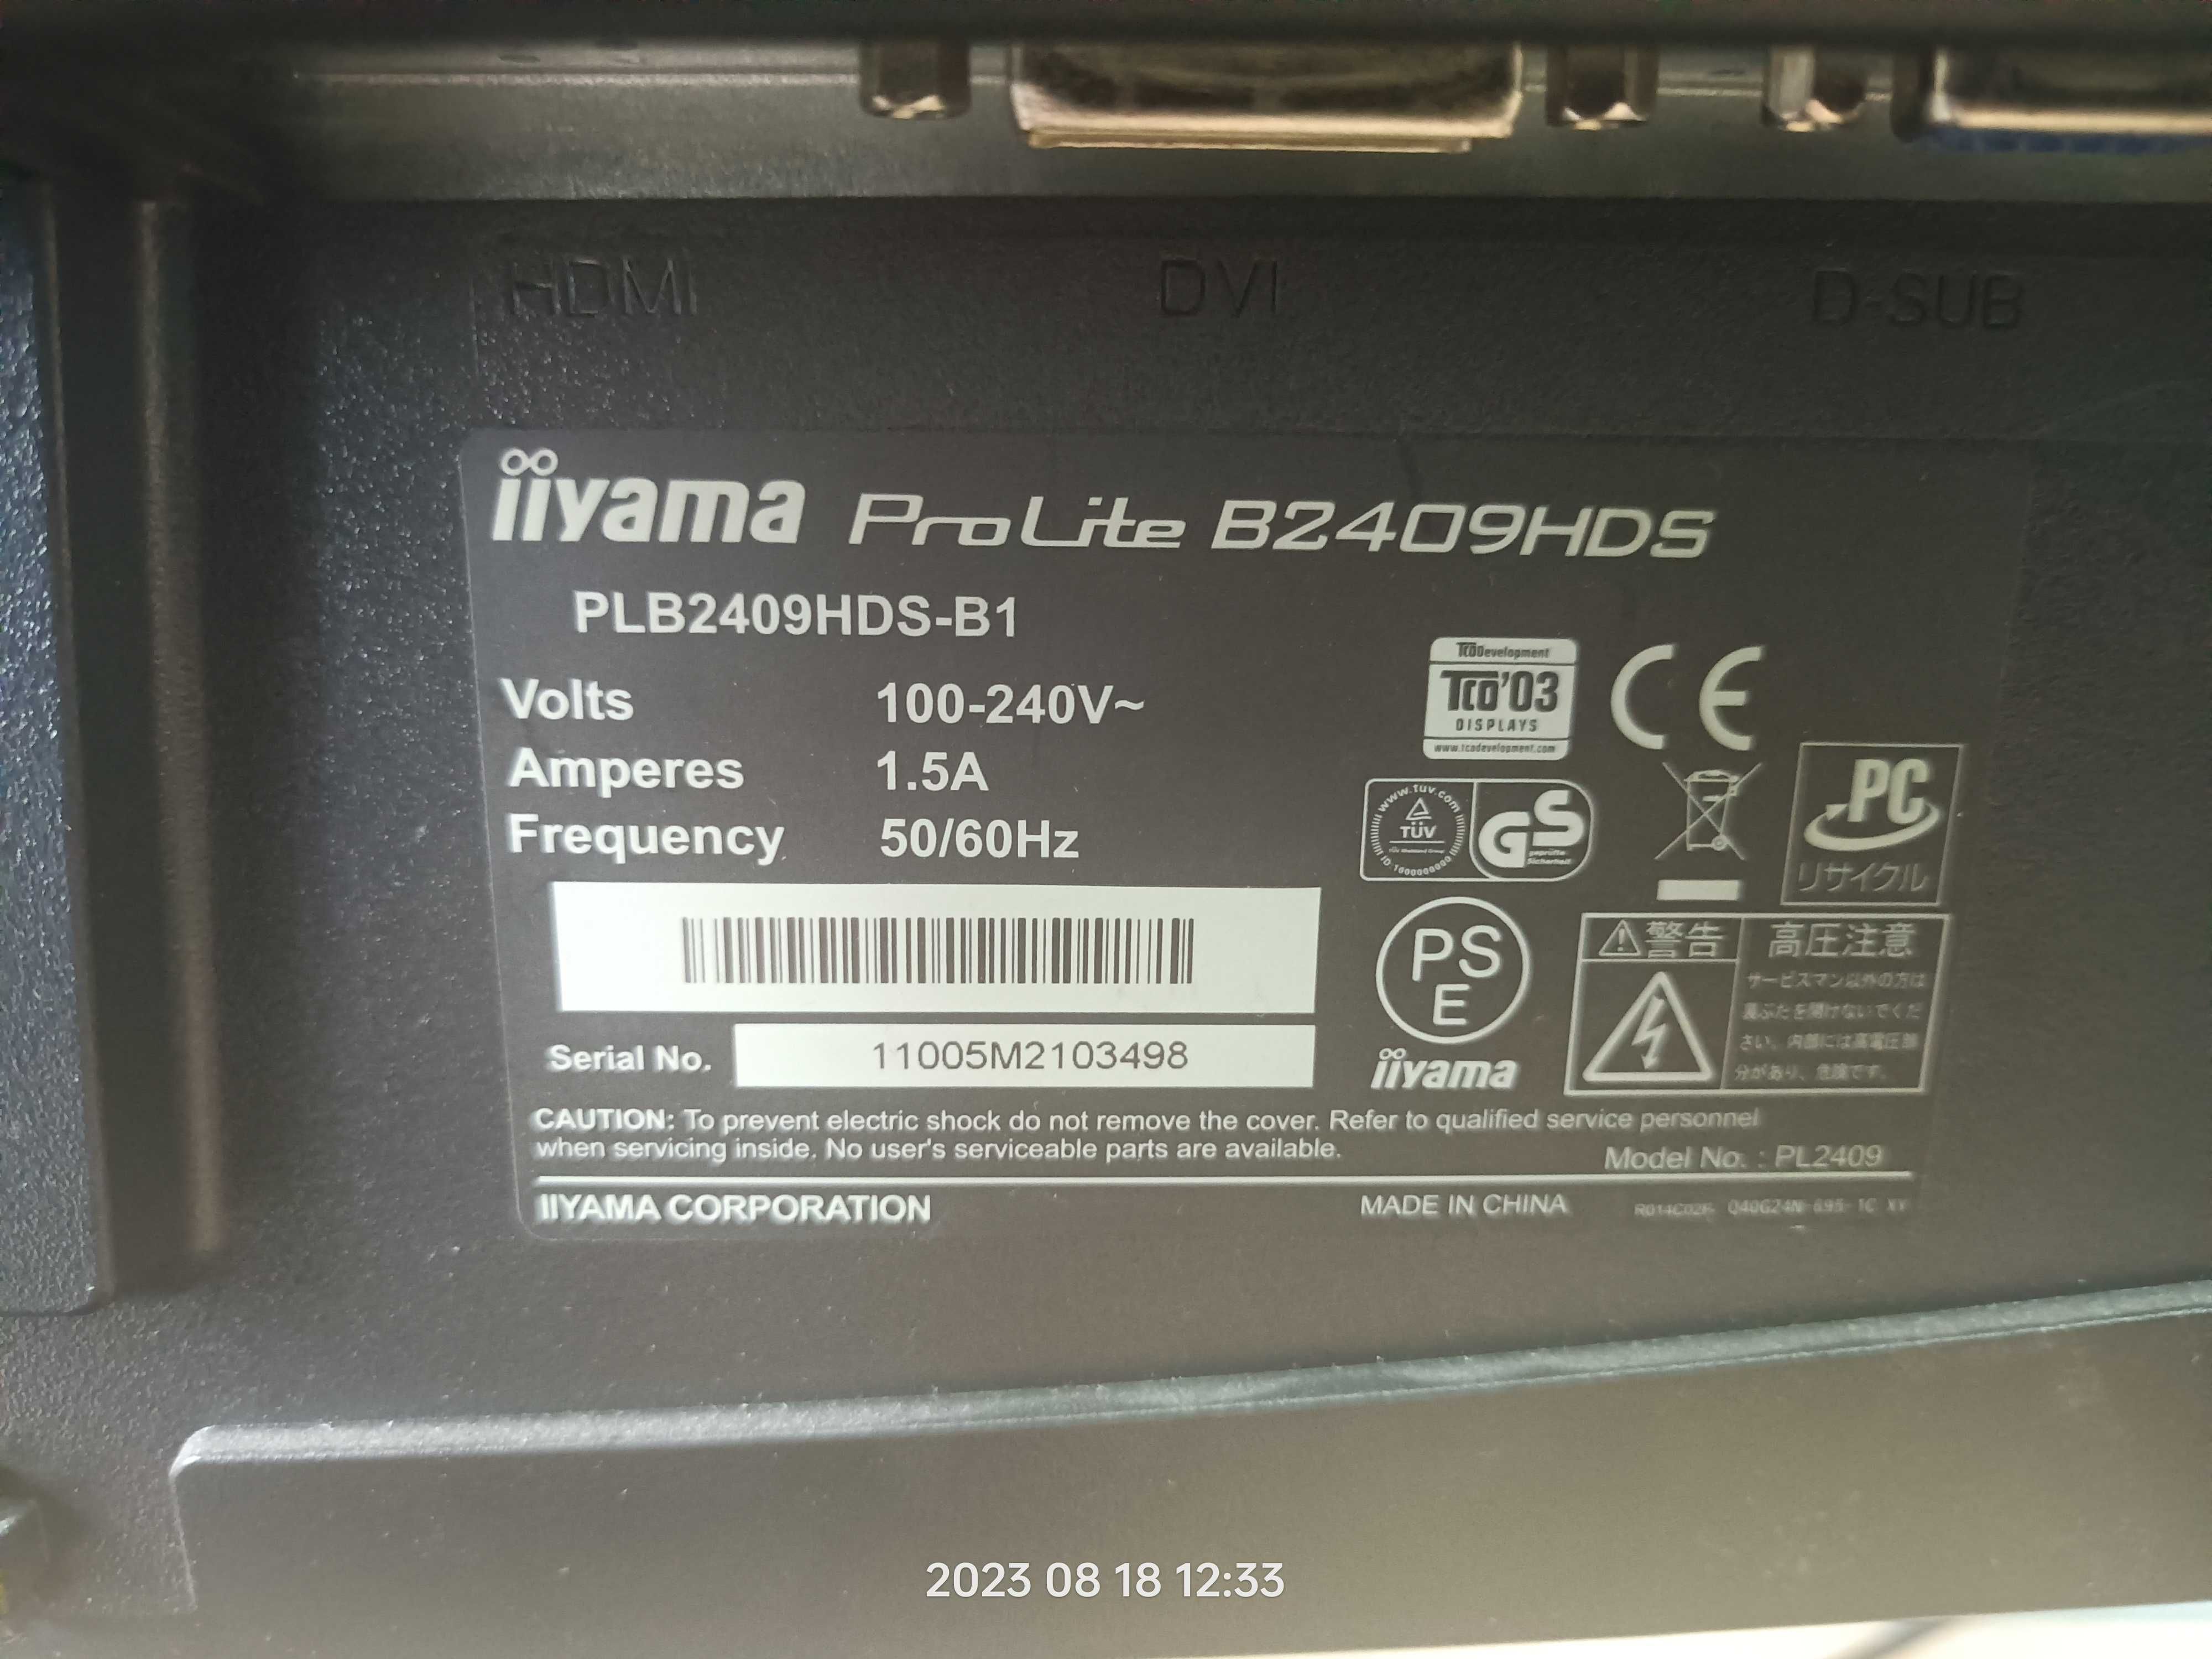 Dell Optiplex 7010 + Monitor iiyama 24”